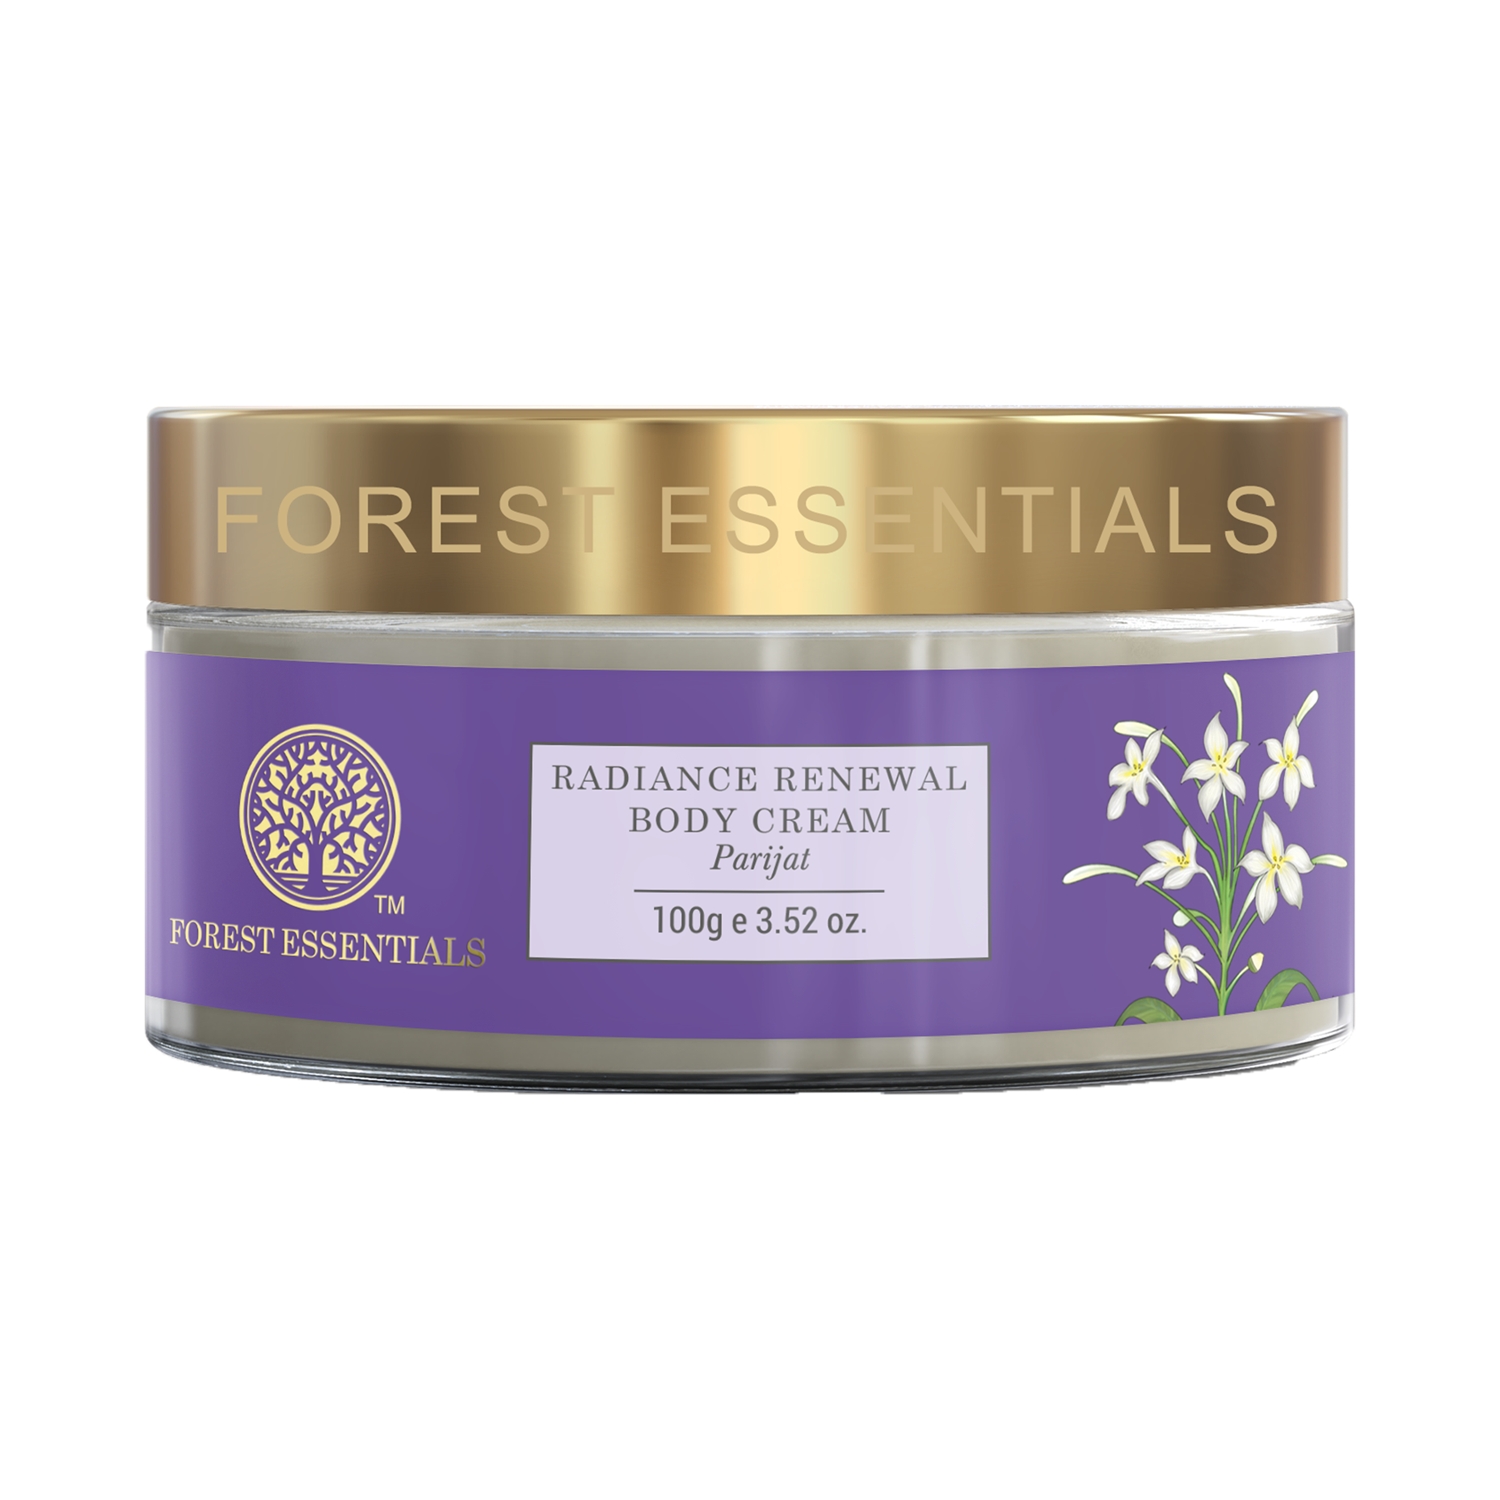 Forest Essentials | Forest Essentials Parijat Radiance Renewal Body Cream (100g)